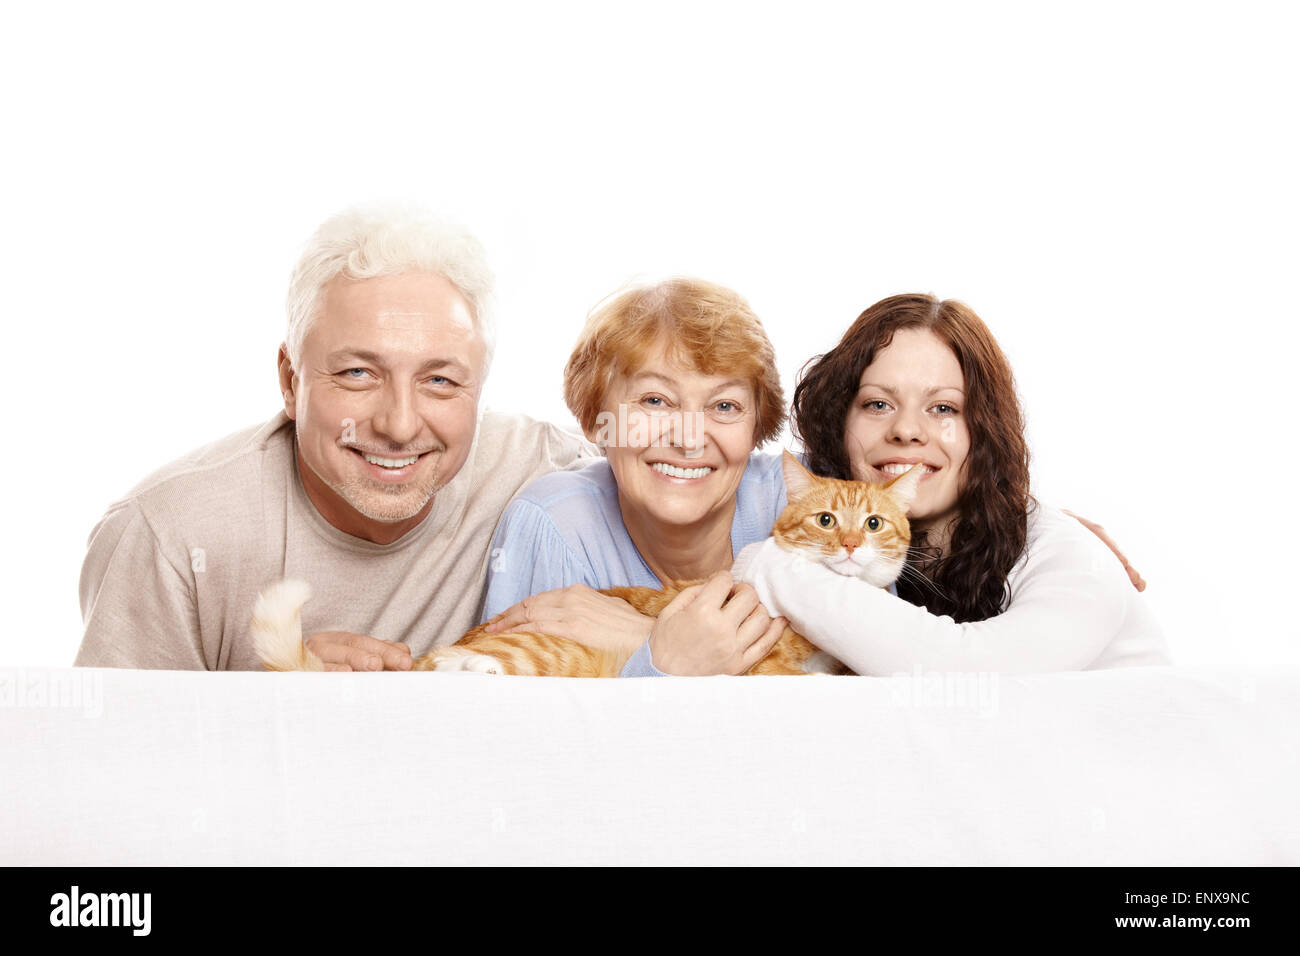 Glückliche Familie zusammen mit einer Katze auf einem weißen Hintergrund Stockfoto